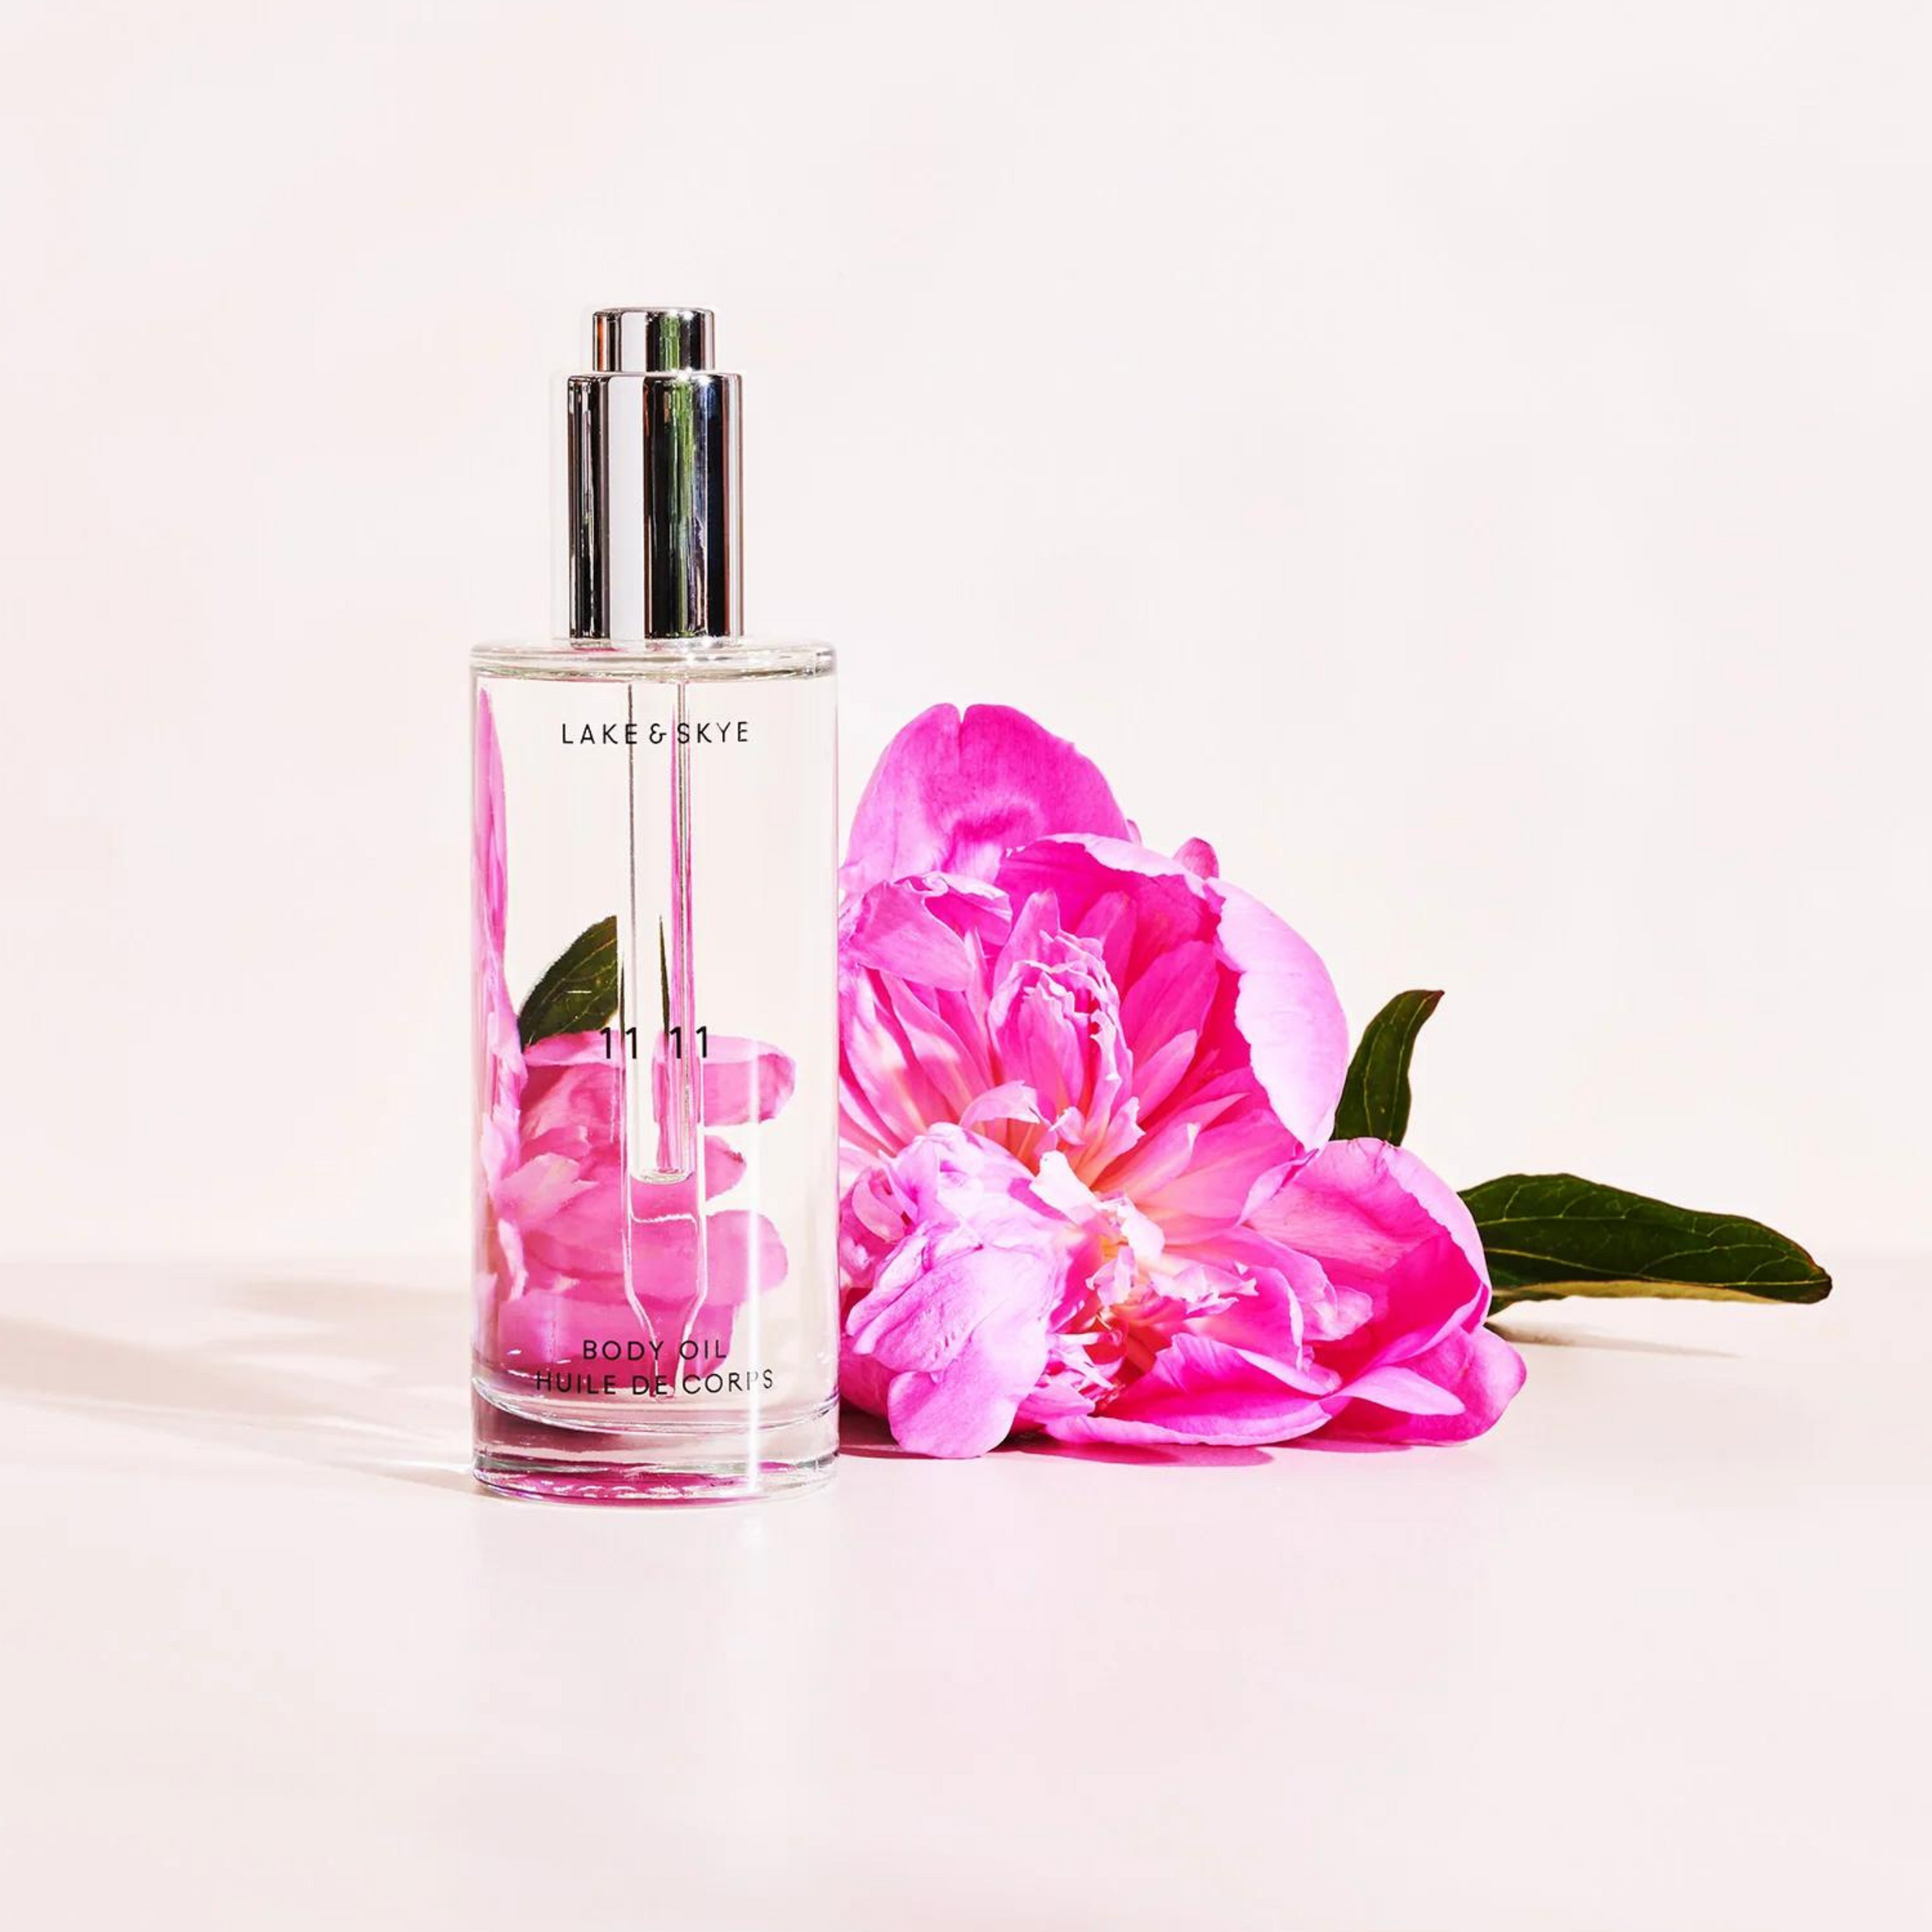 11 11 Eau de Parfum – Knockout Beauty